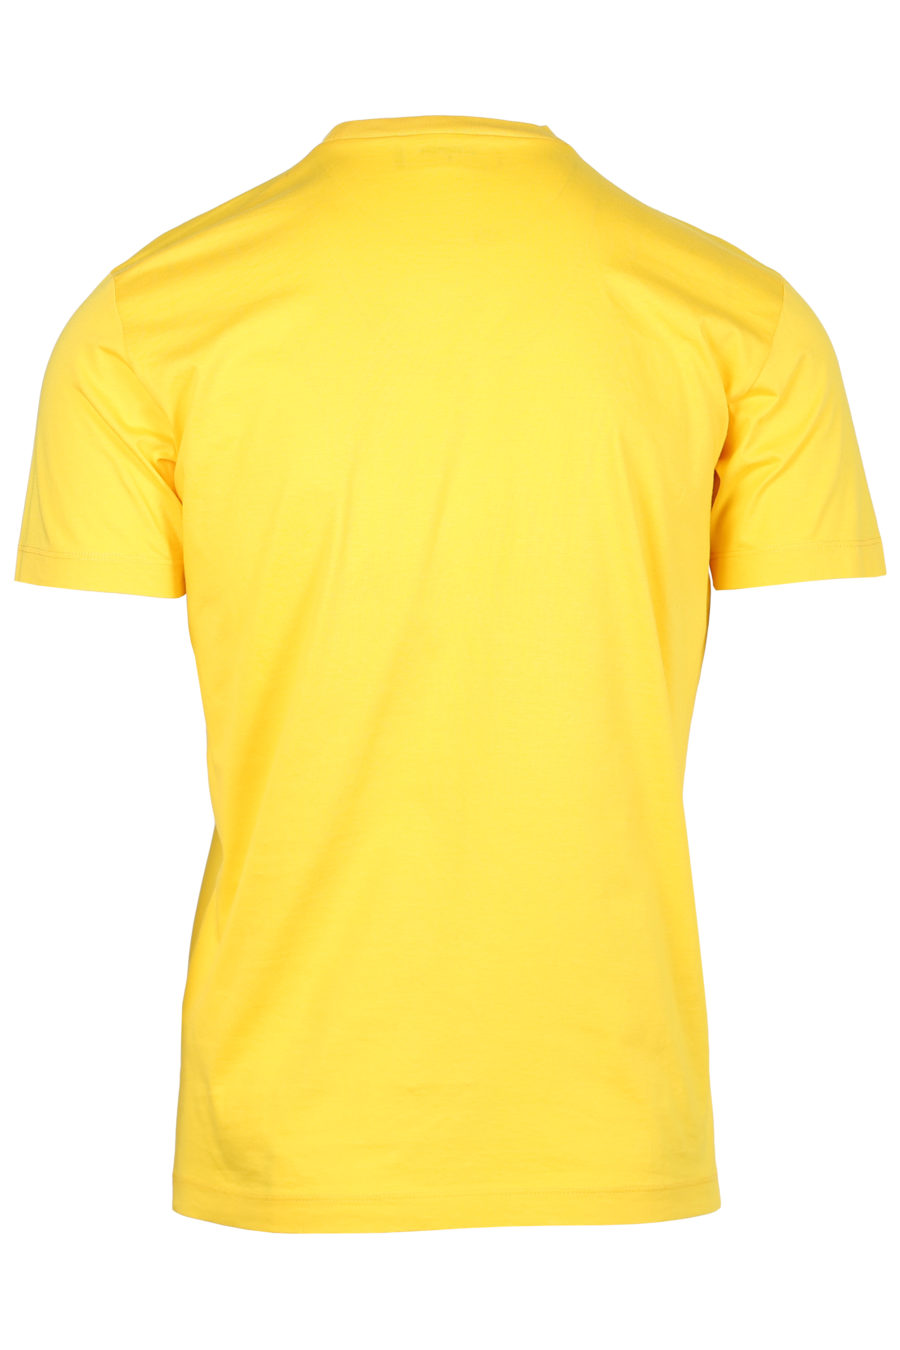 Camiseta amarilla con logo "Icon Spray" - IMG 2330